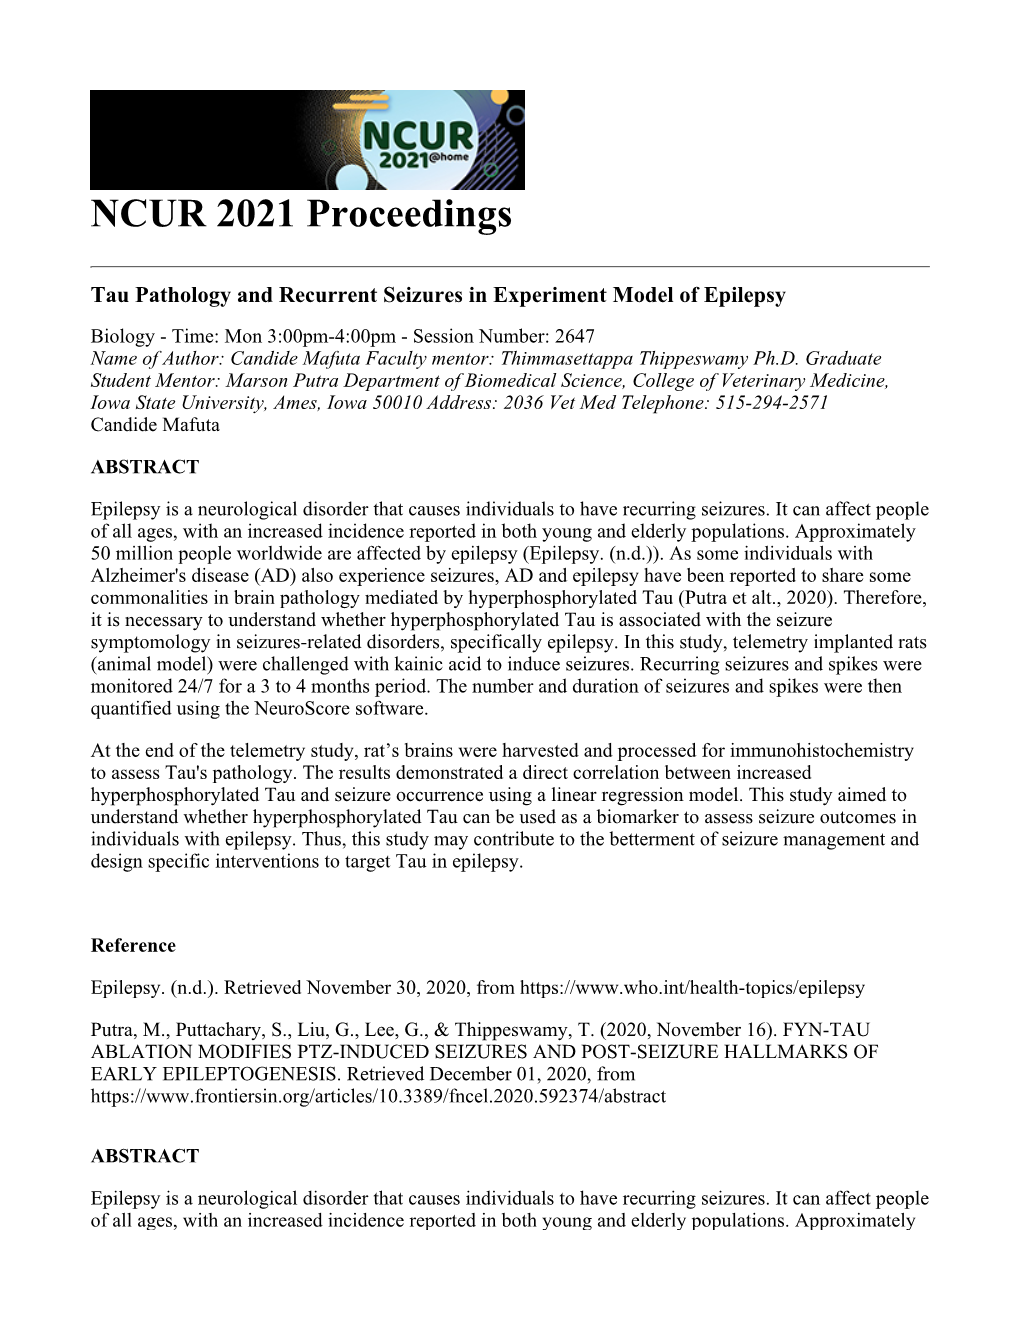 NCUR Proceedings